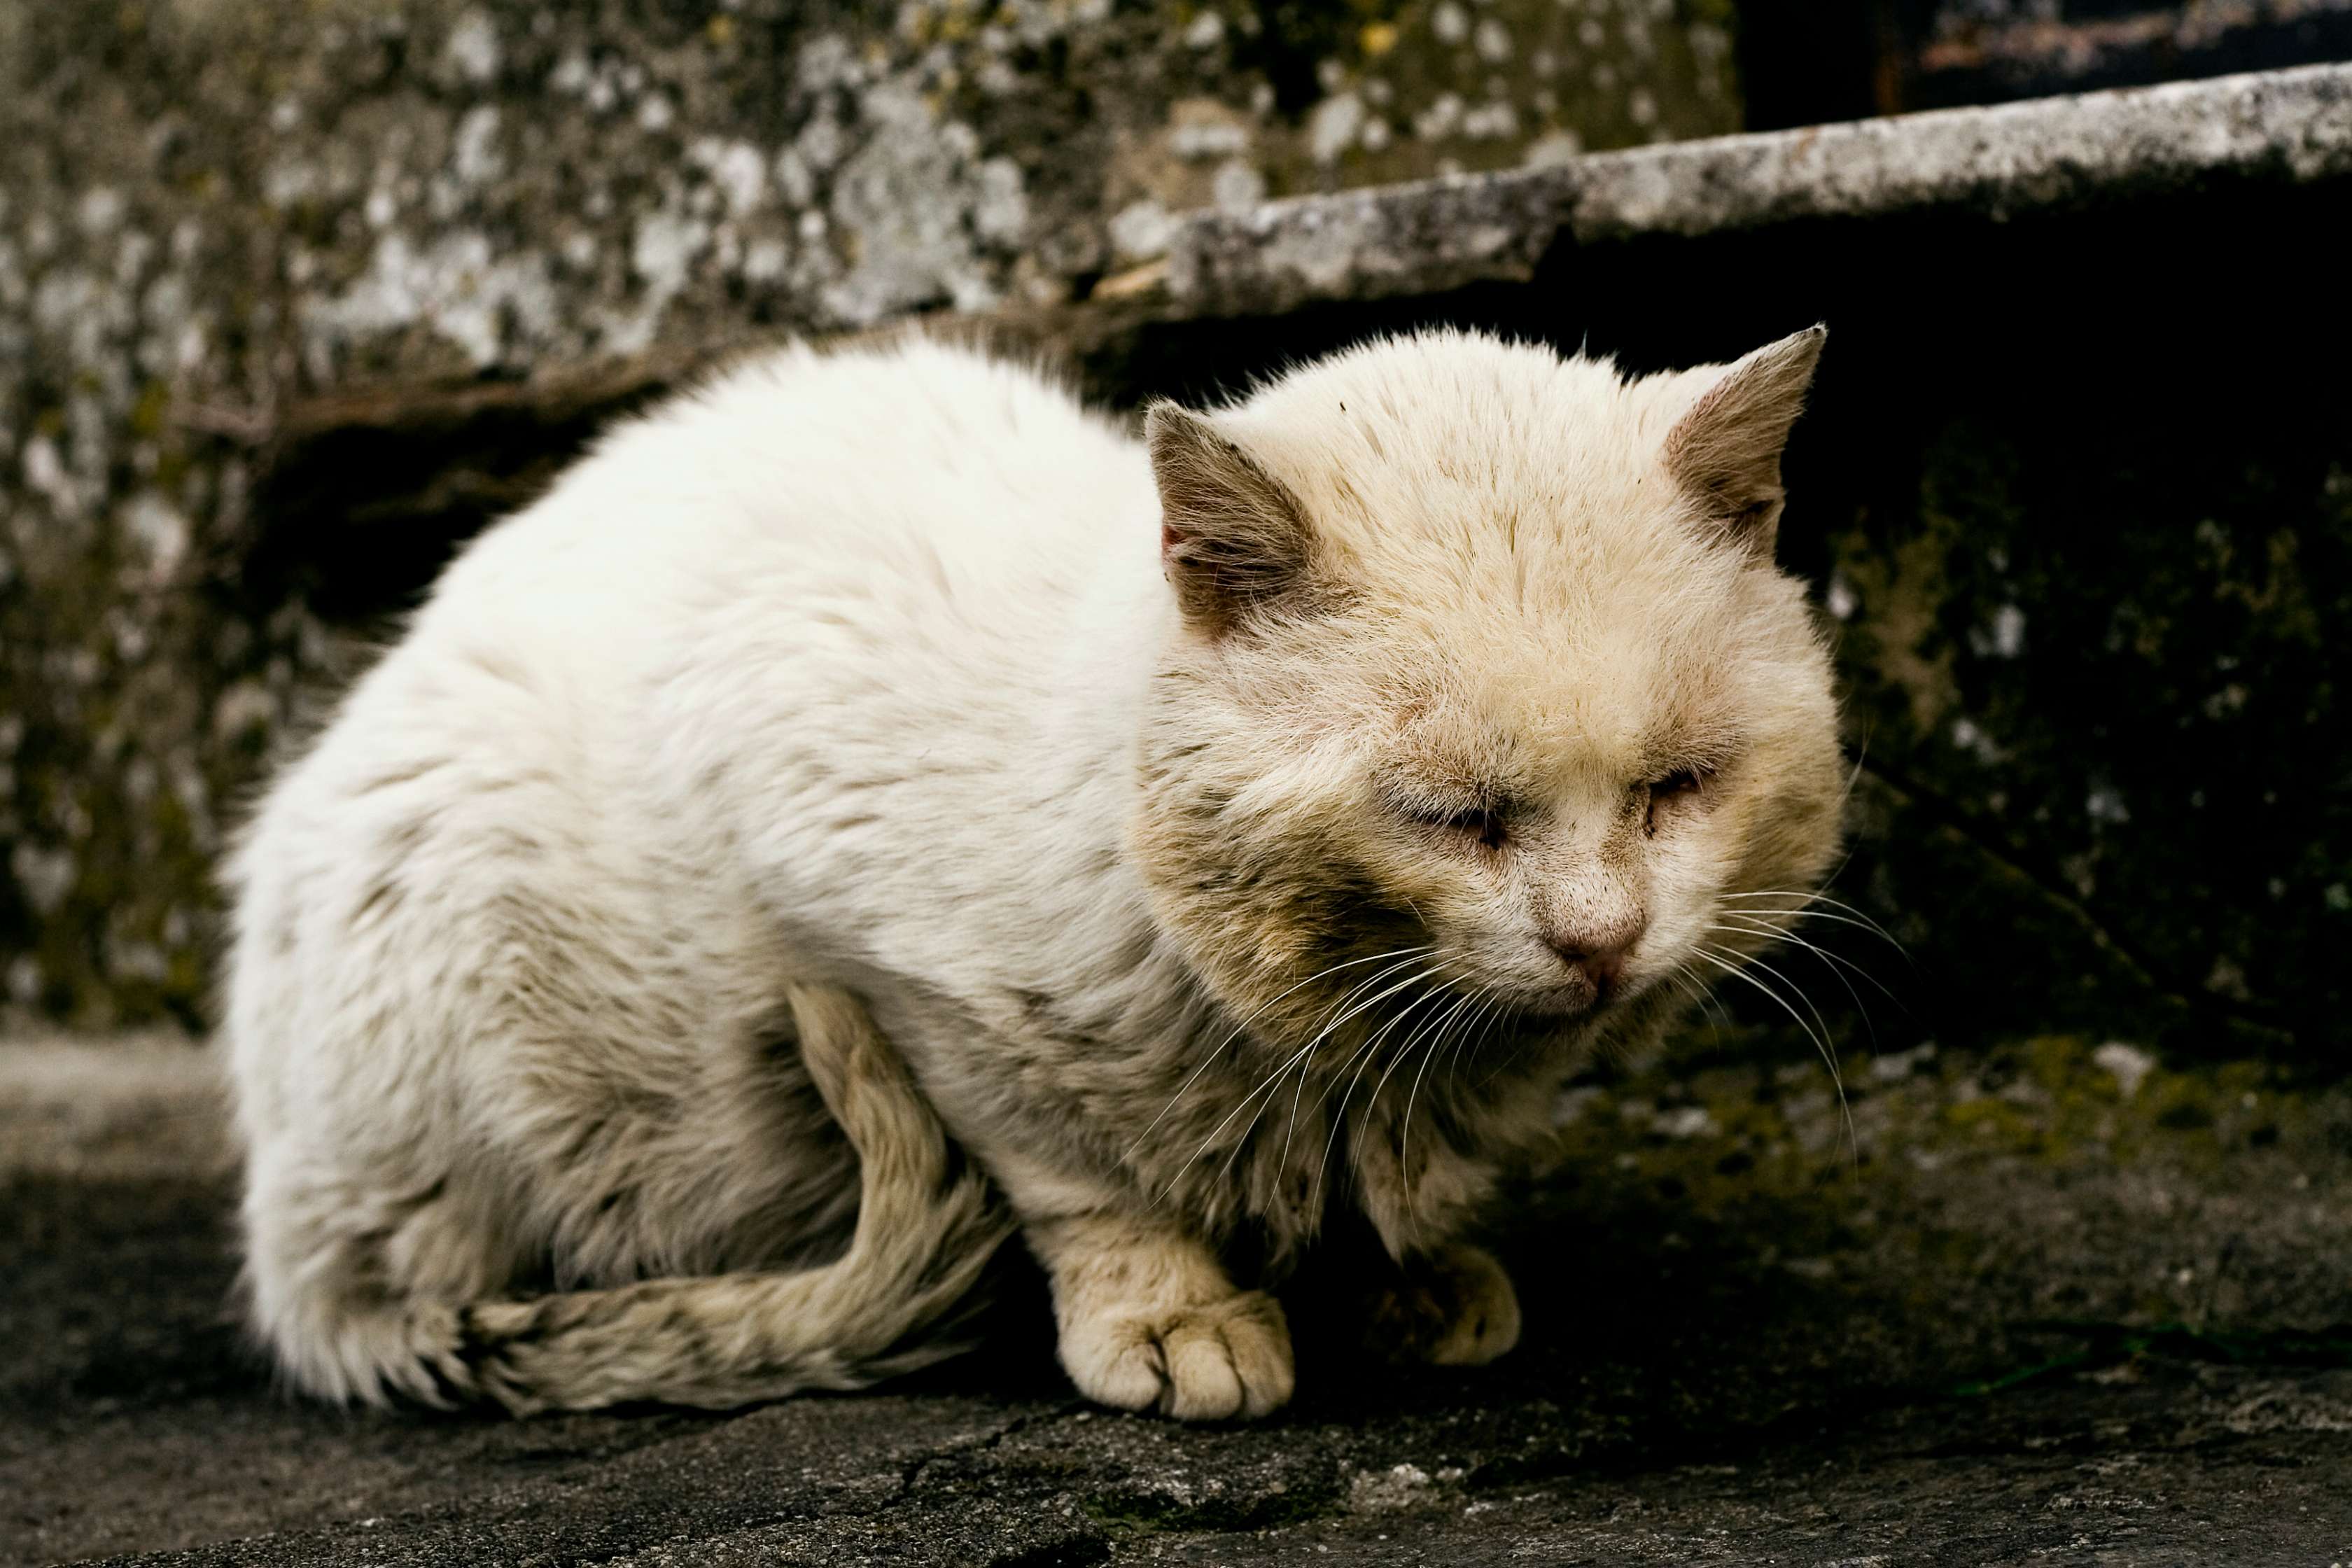 Allianz - Wurmkur Katze: Katze sieht krank aus